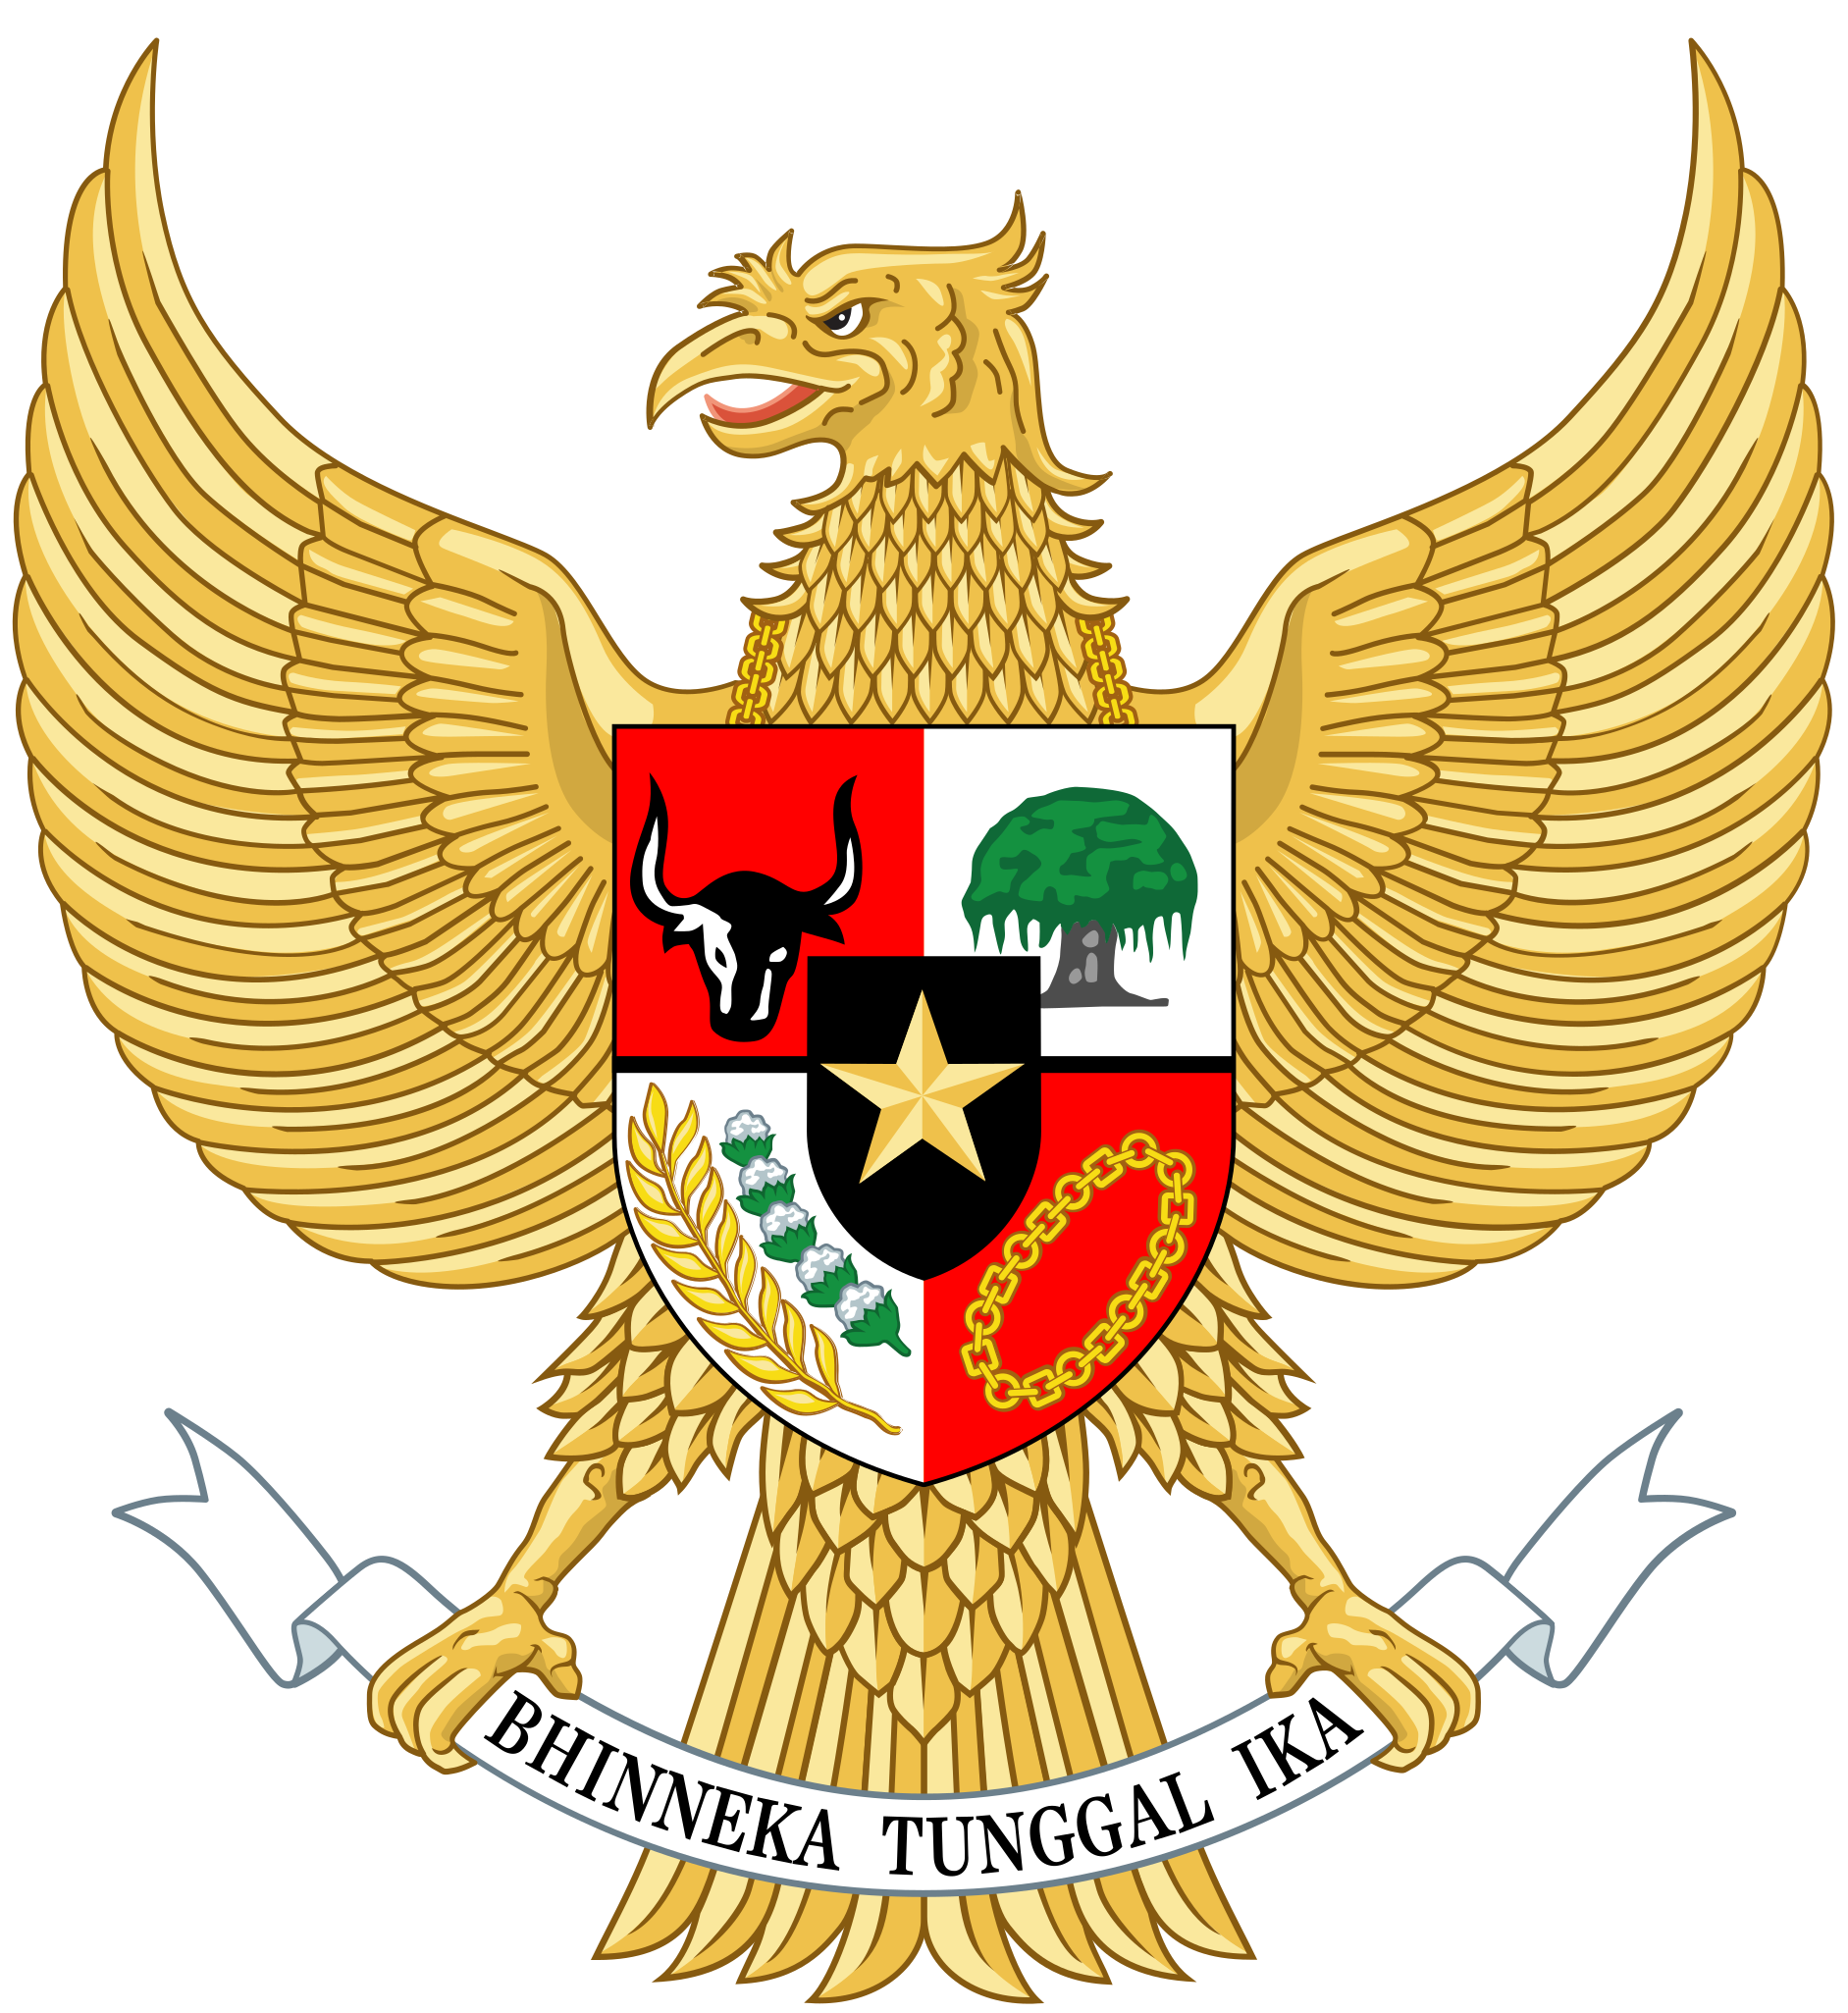 National_emblem_of_Indonesia_Garuda_Pancasila.svg.png